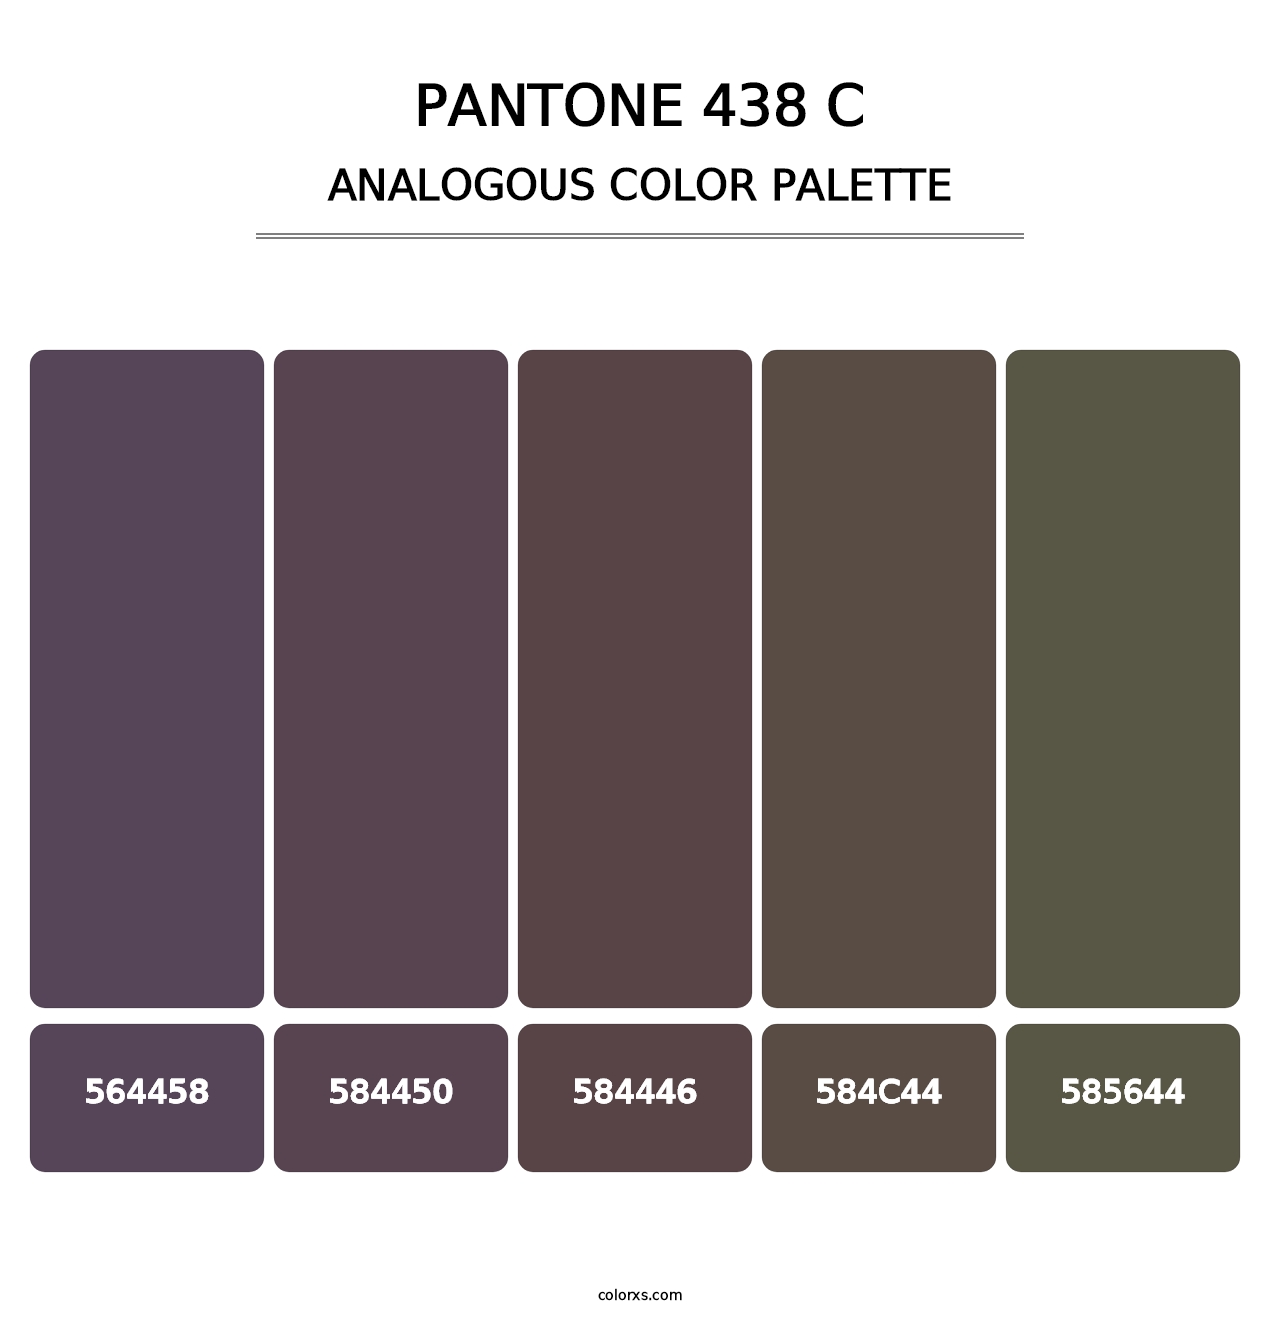 PANTONE 438 C - Analogous Color Palette